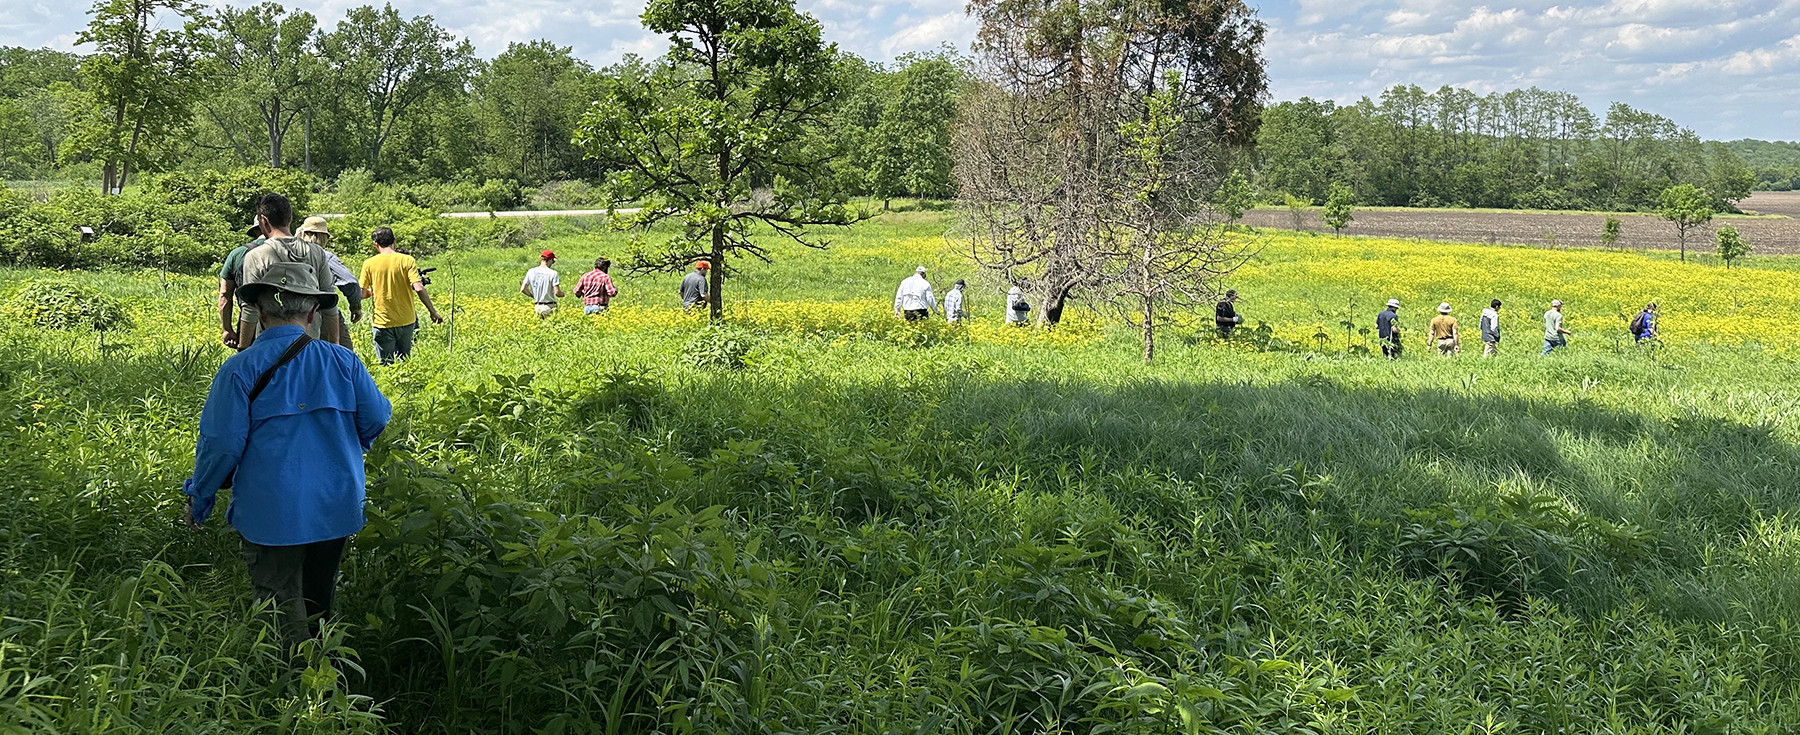 students walking in a field